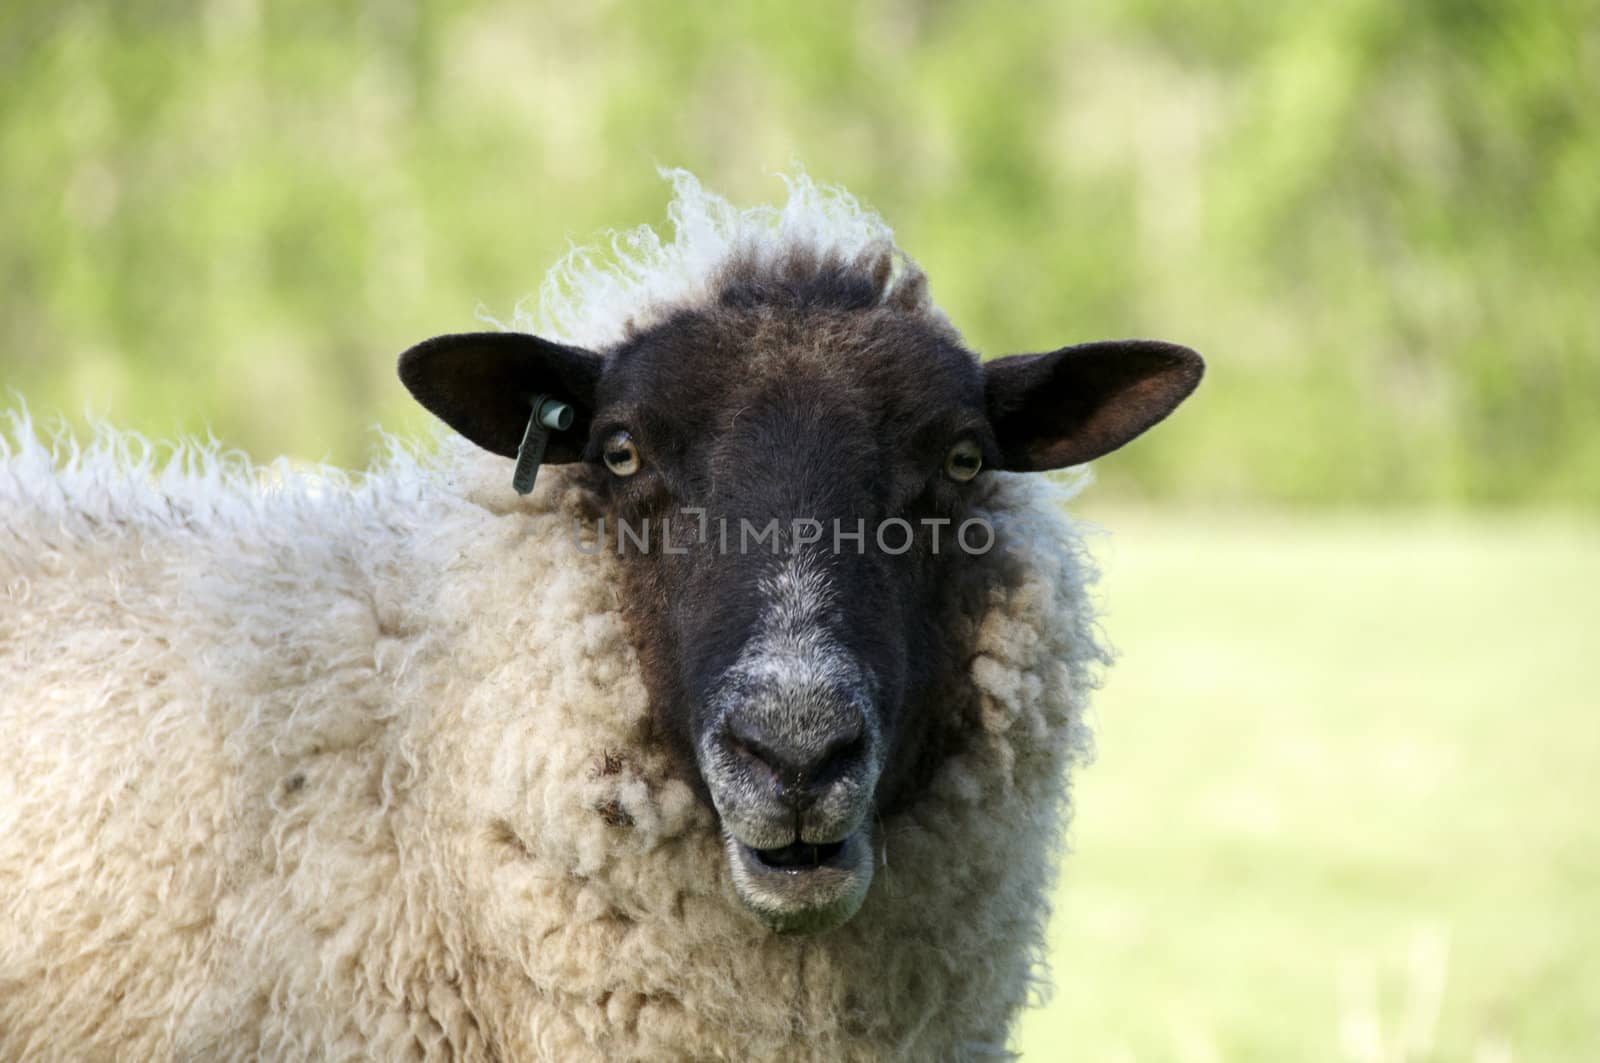 Sheep by mbtaichi